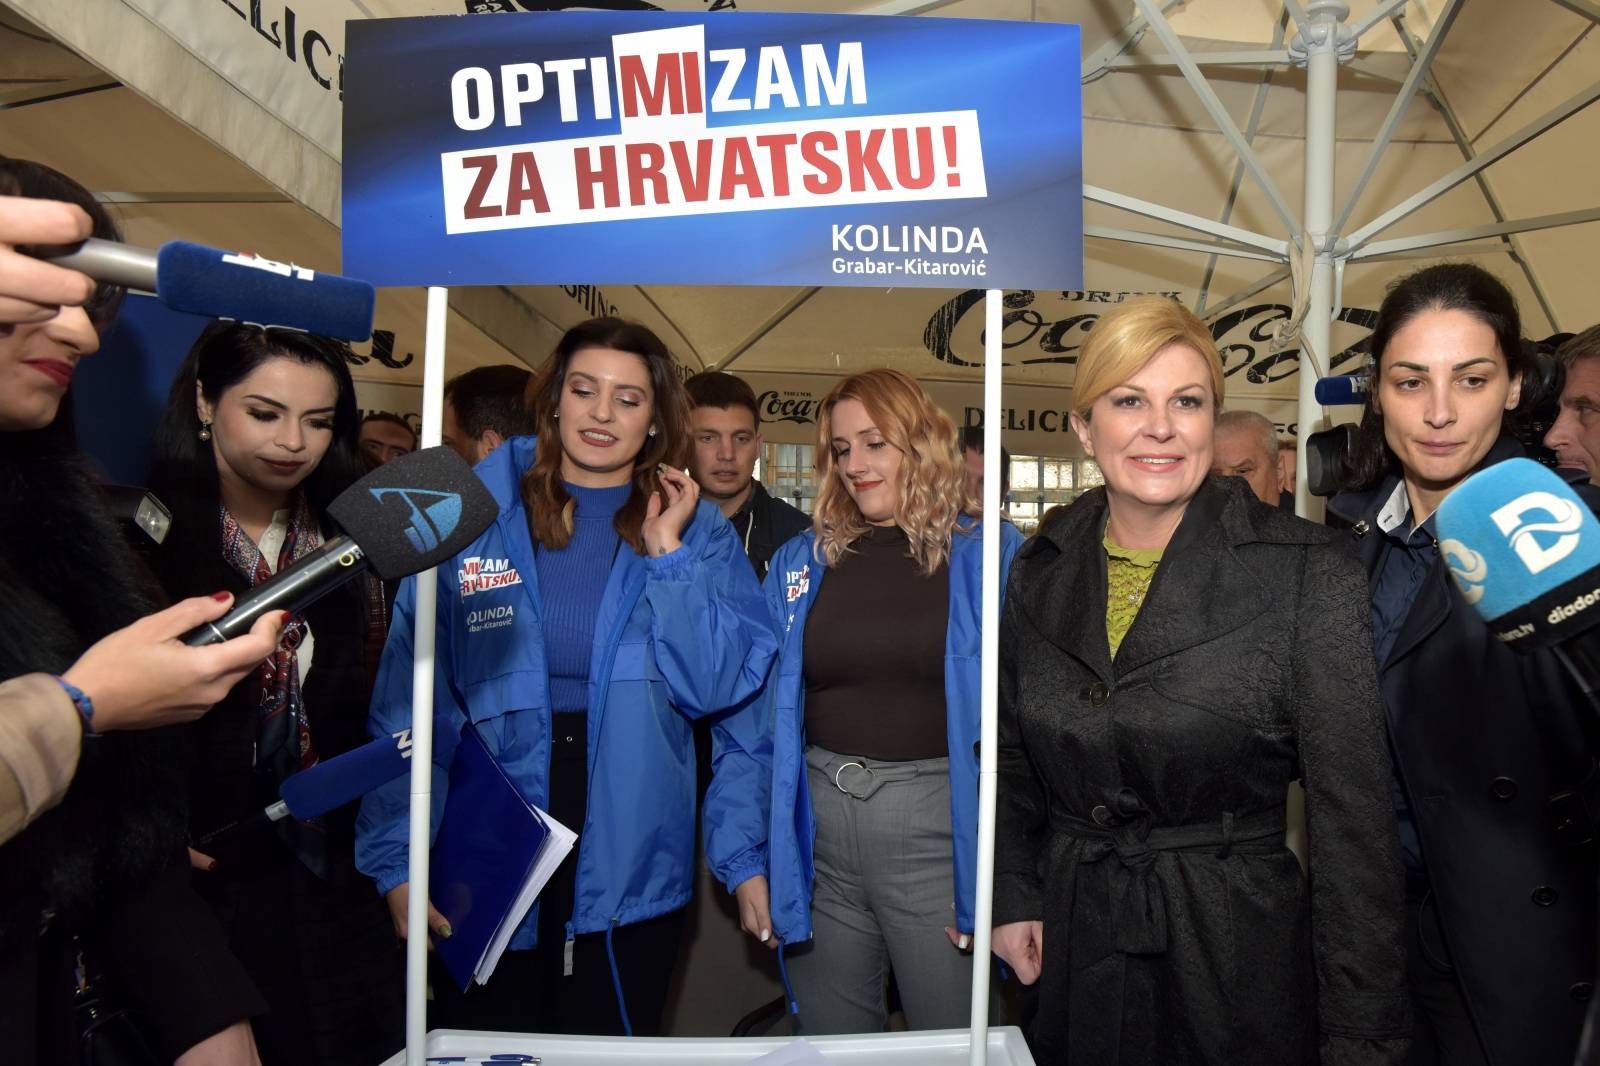 Grabar-Kitarović posjetila Zadar i štand na kojem se prikupljaju potpisi